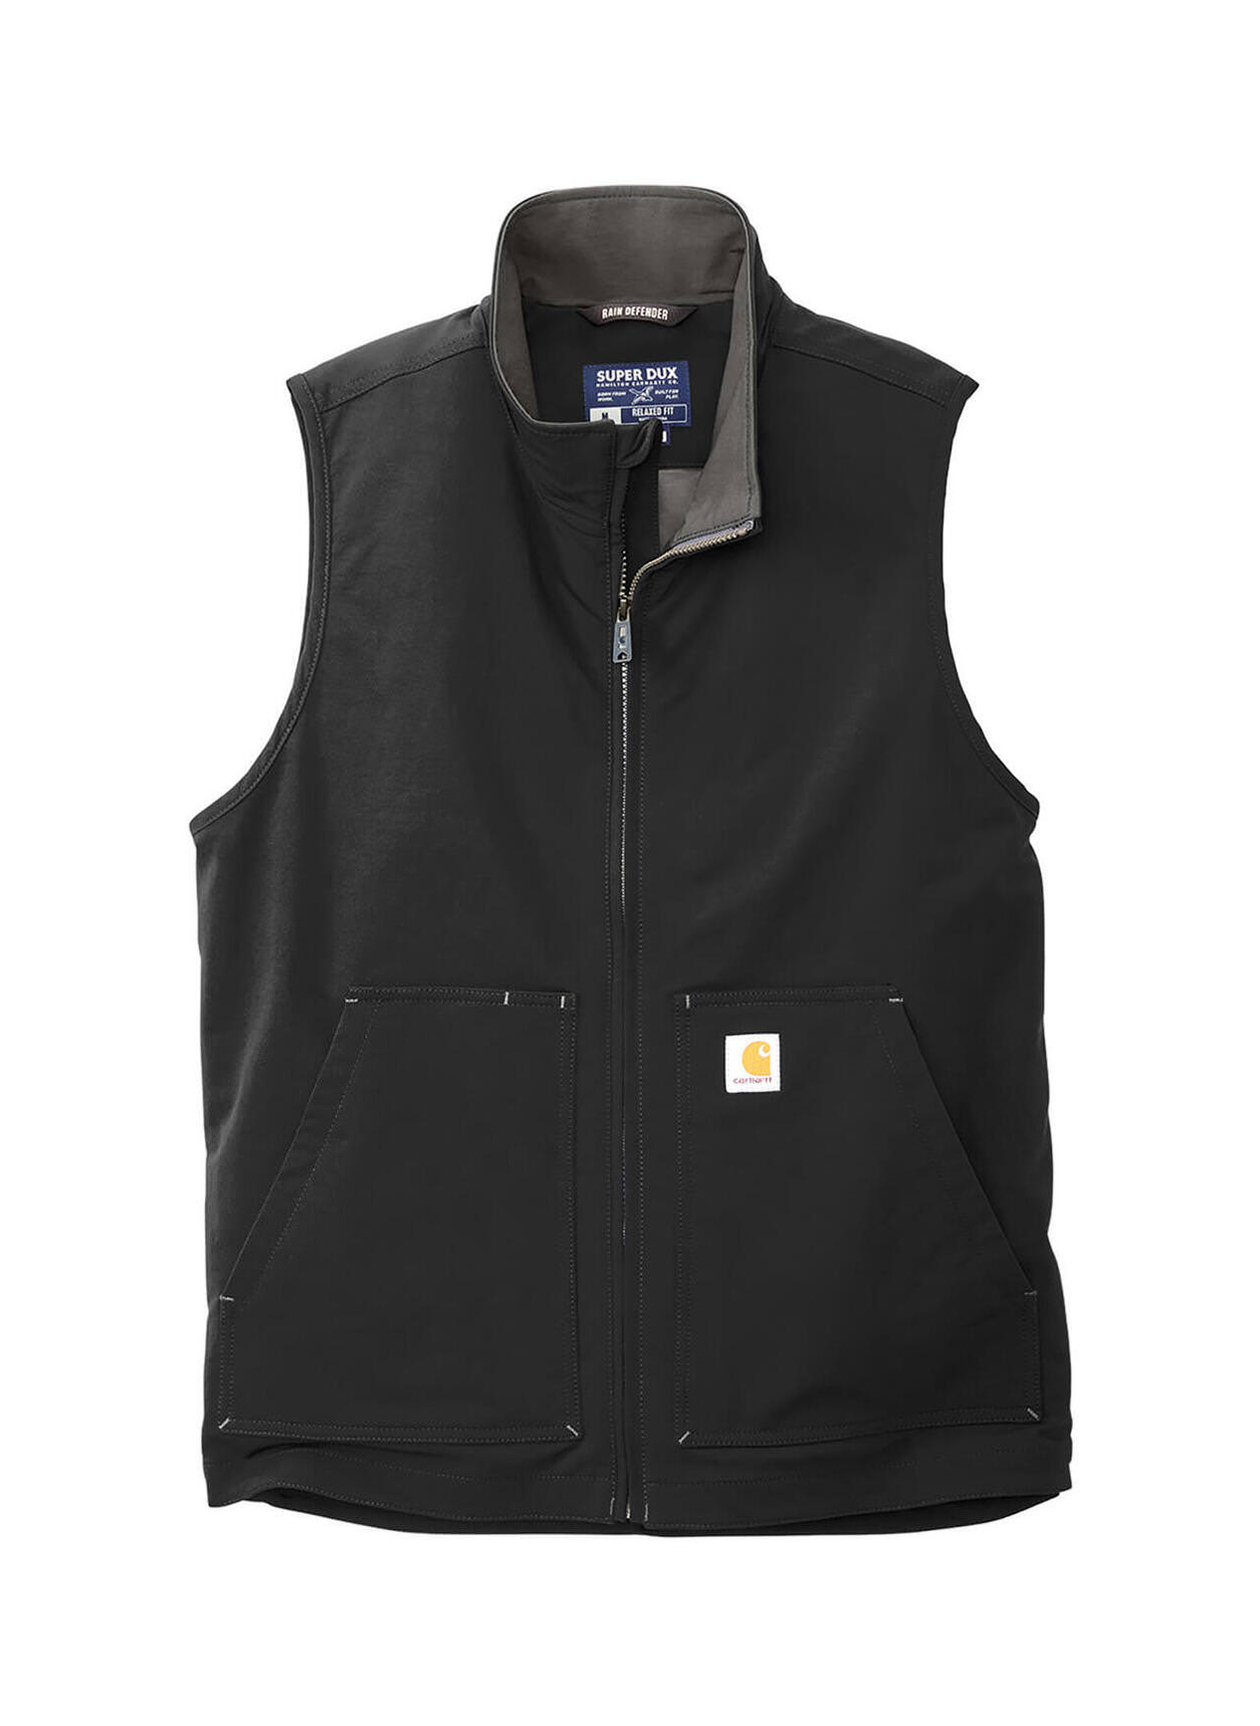 Carhartt Men's Black Super Dux Soft Shell Vest | Custom Vest